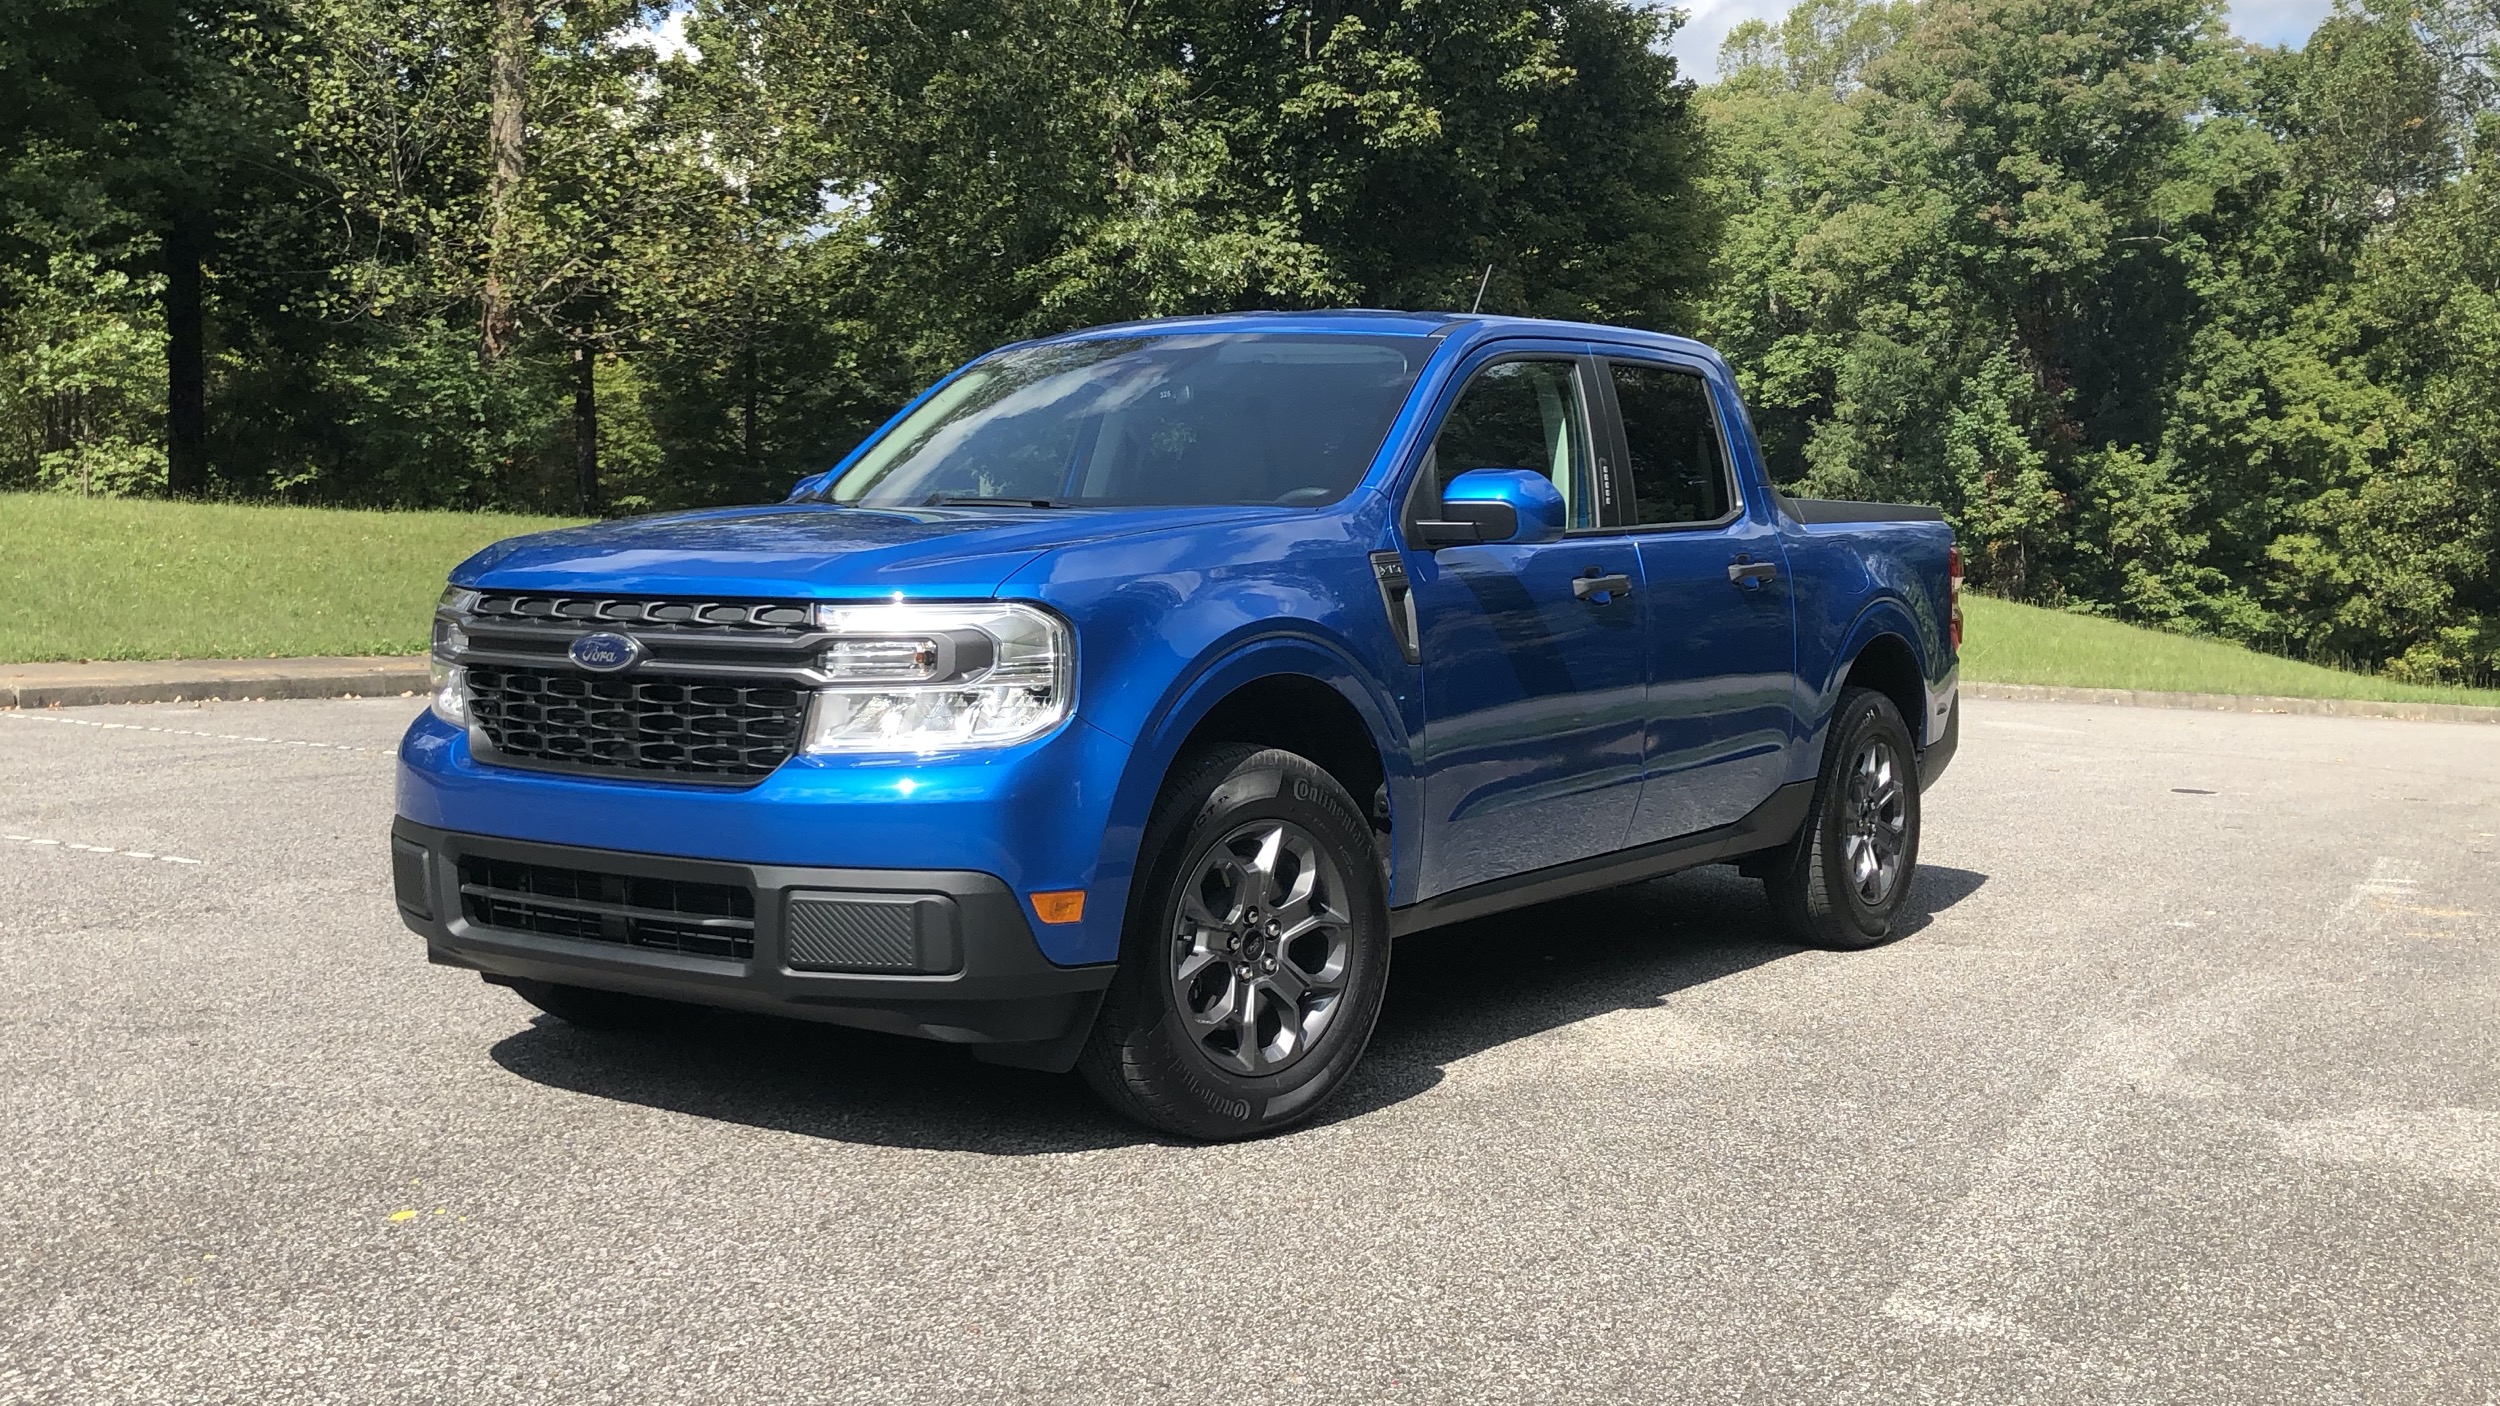 2023 Ford Maverick exterior paint colors leaked - Autoblog